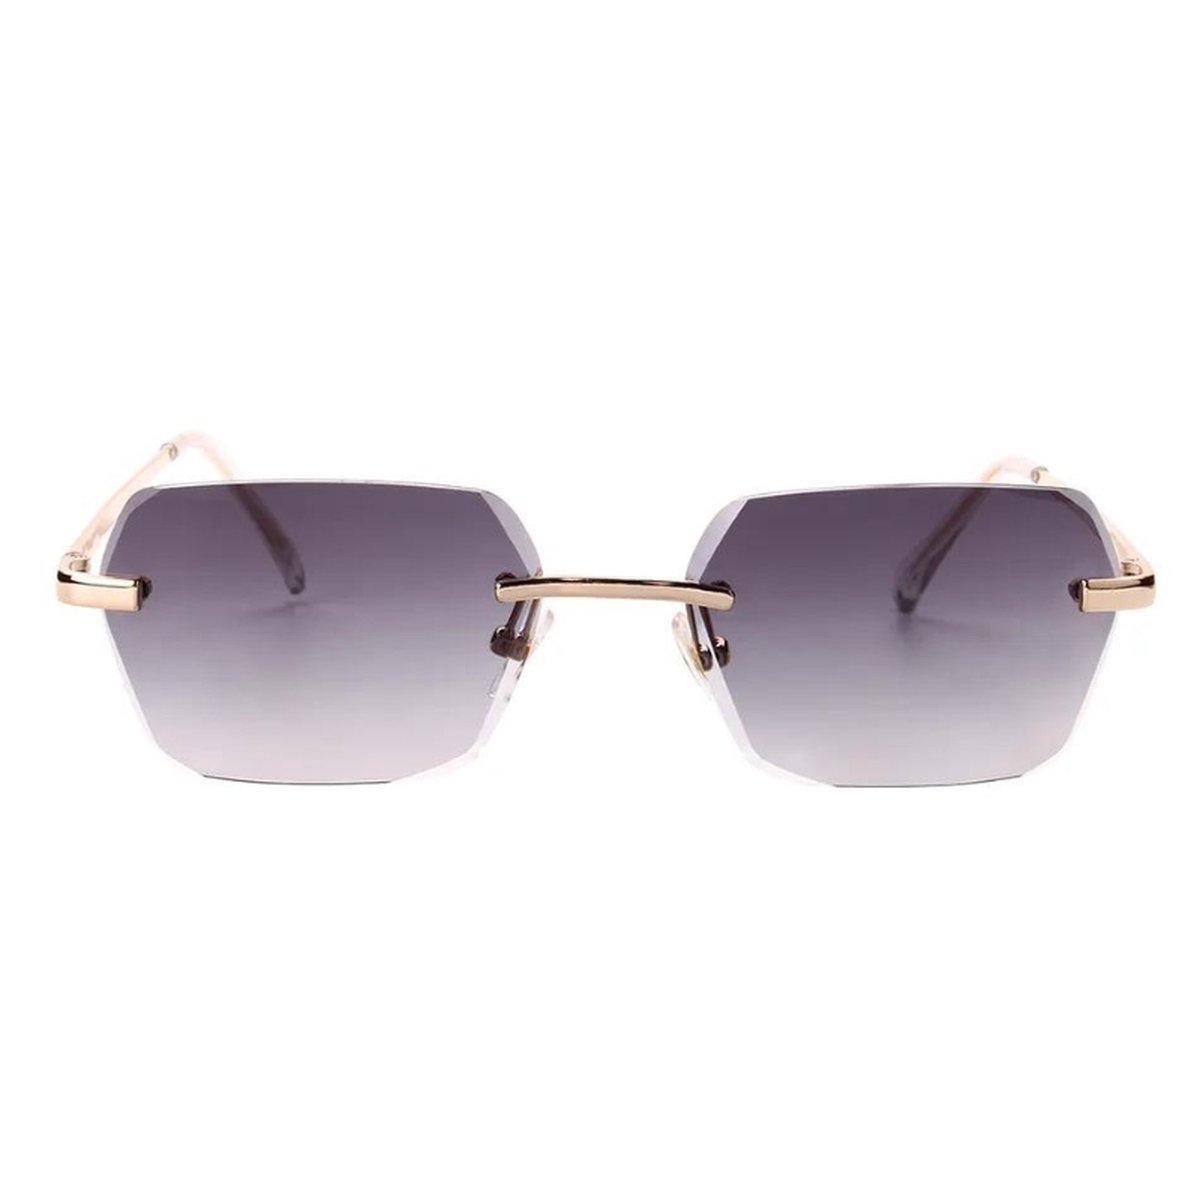 Donkergroene heren zonnebril Diamond Cut Blité - UV 400 - Mannen zonnebril - Transparante zonnebril